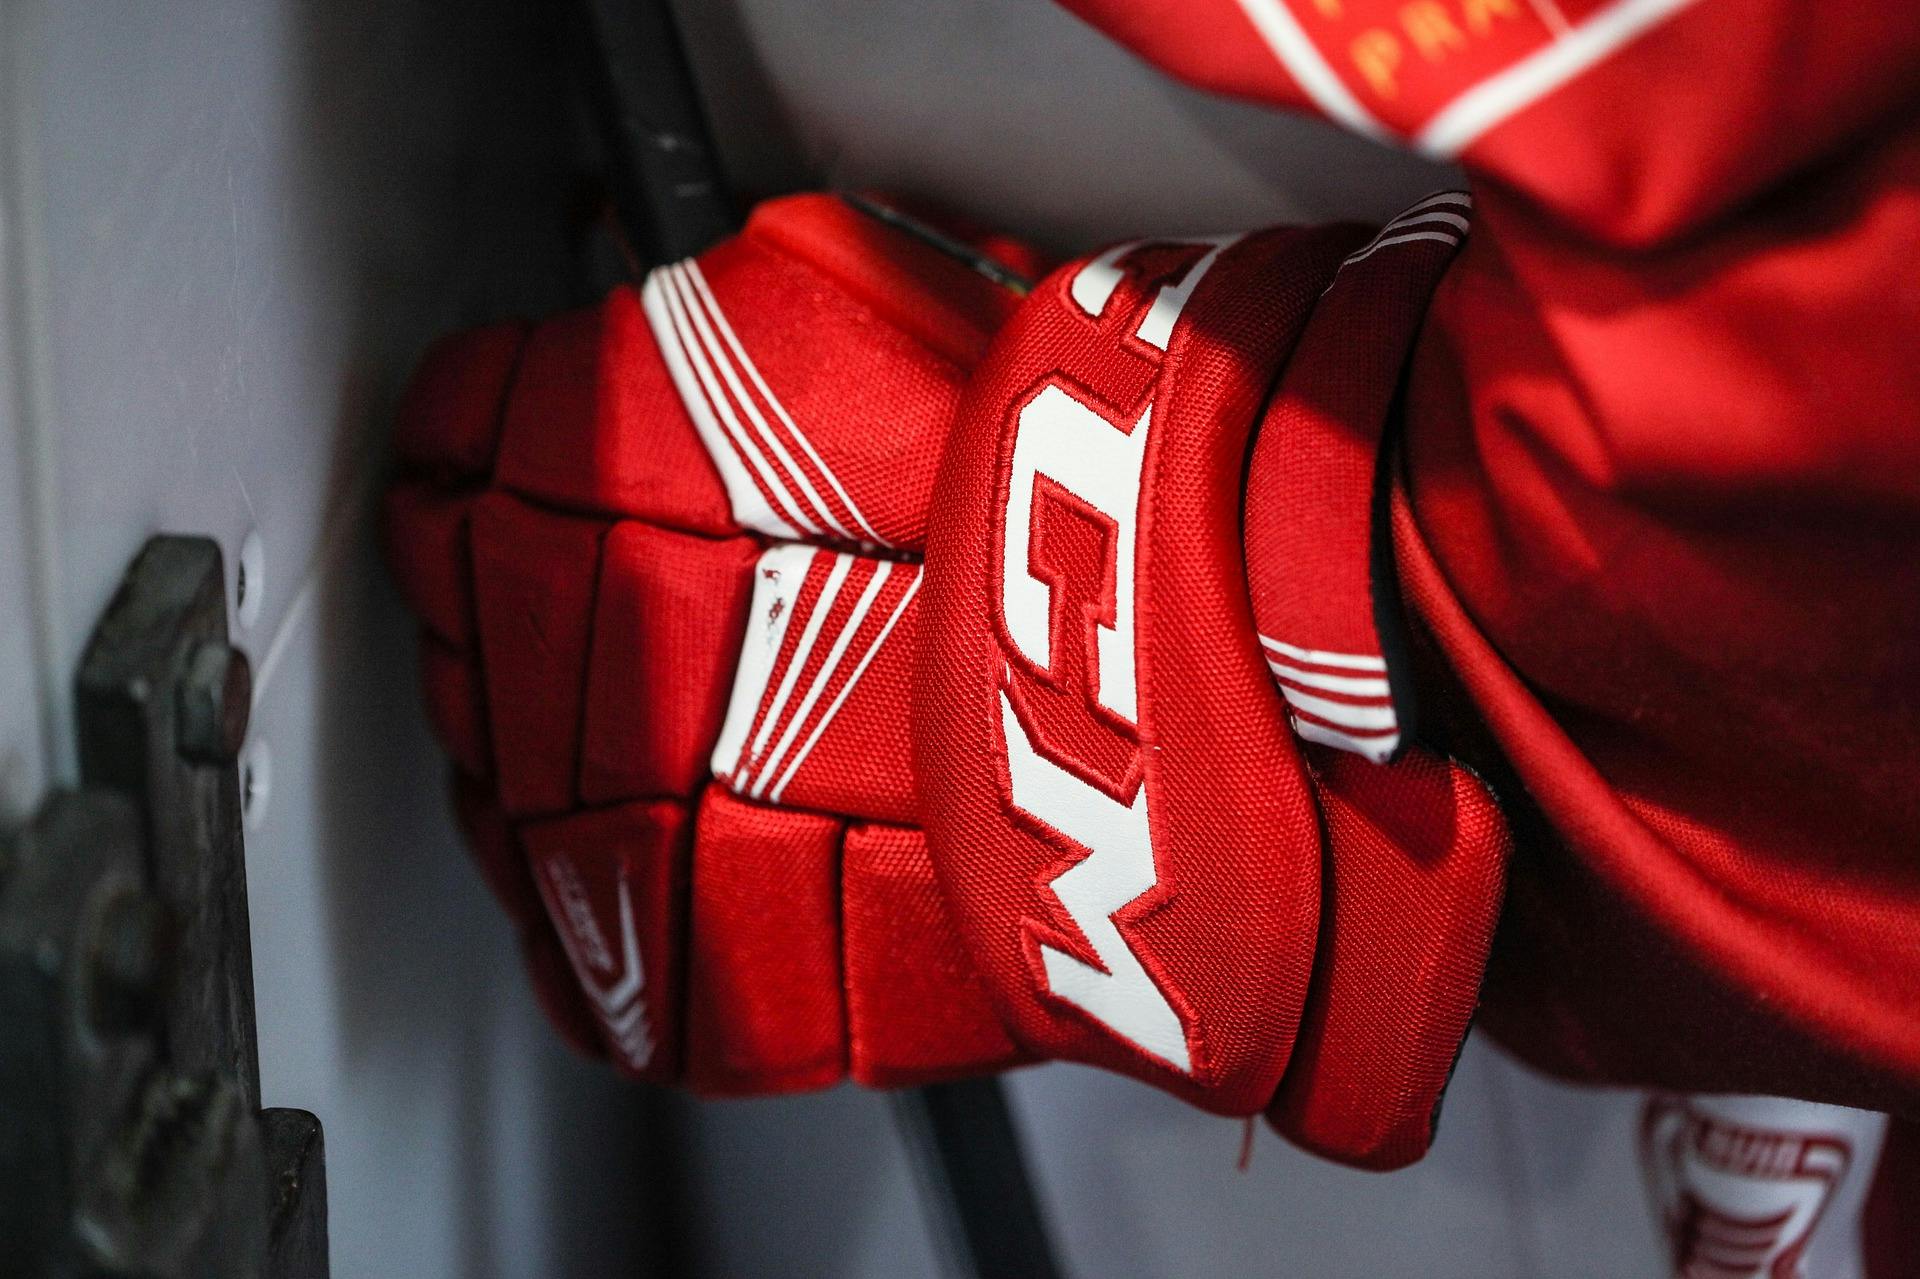 Hockey gloves